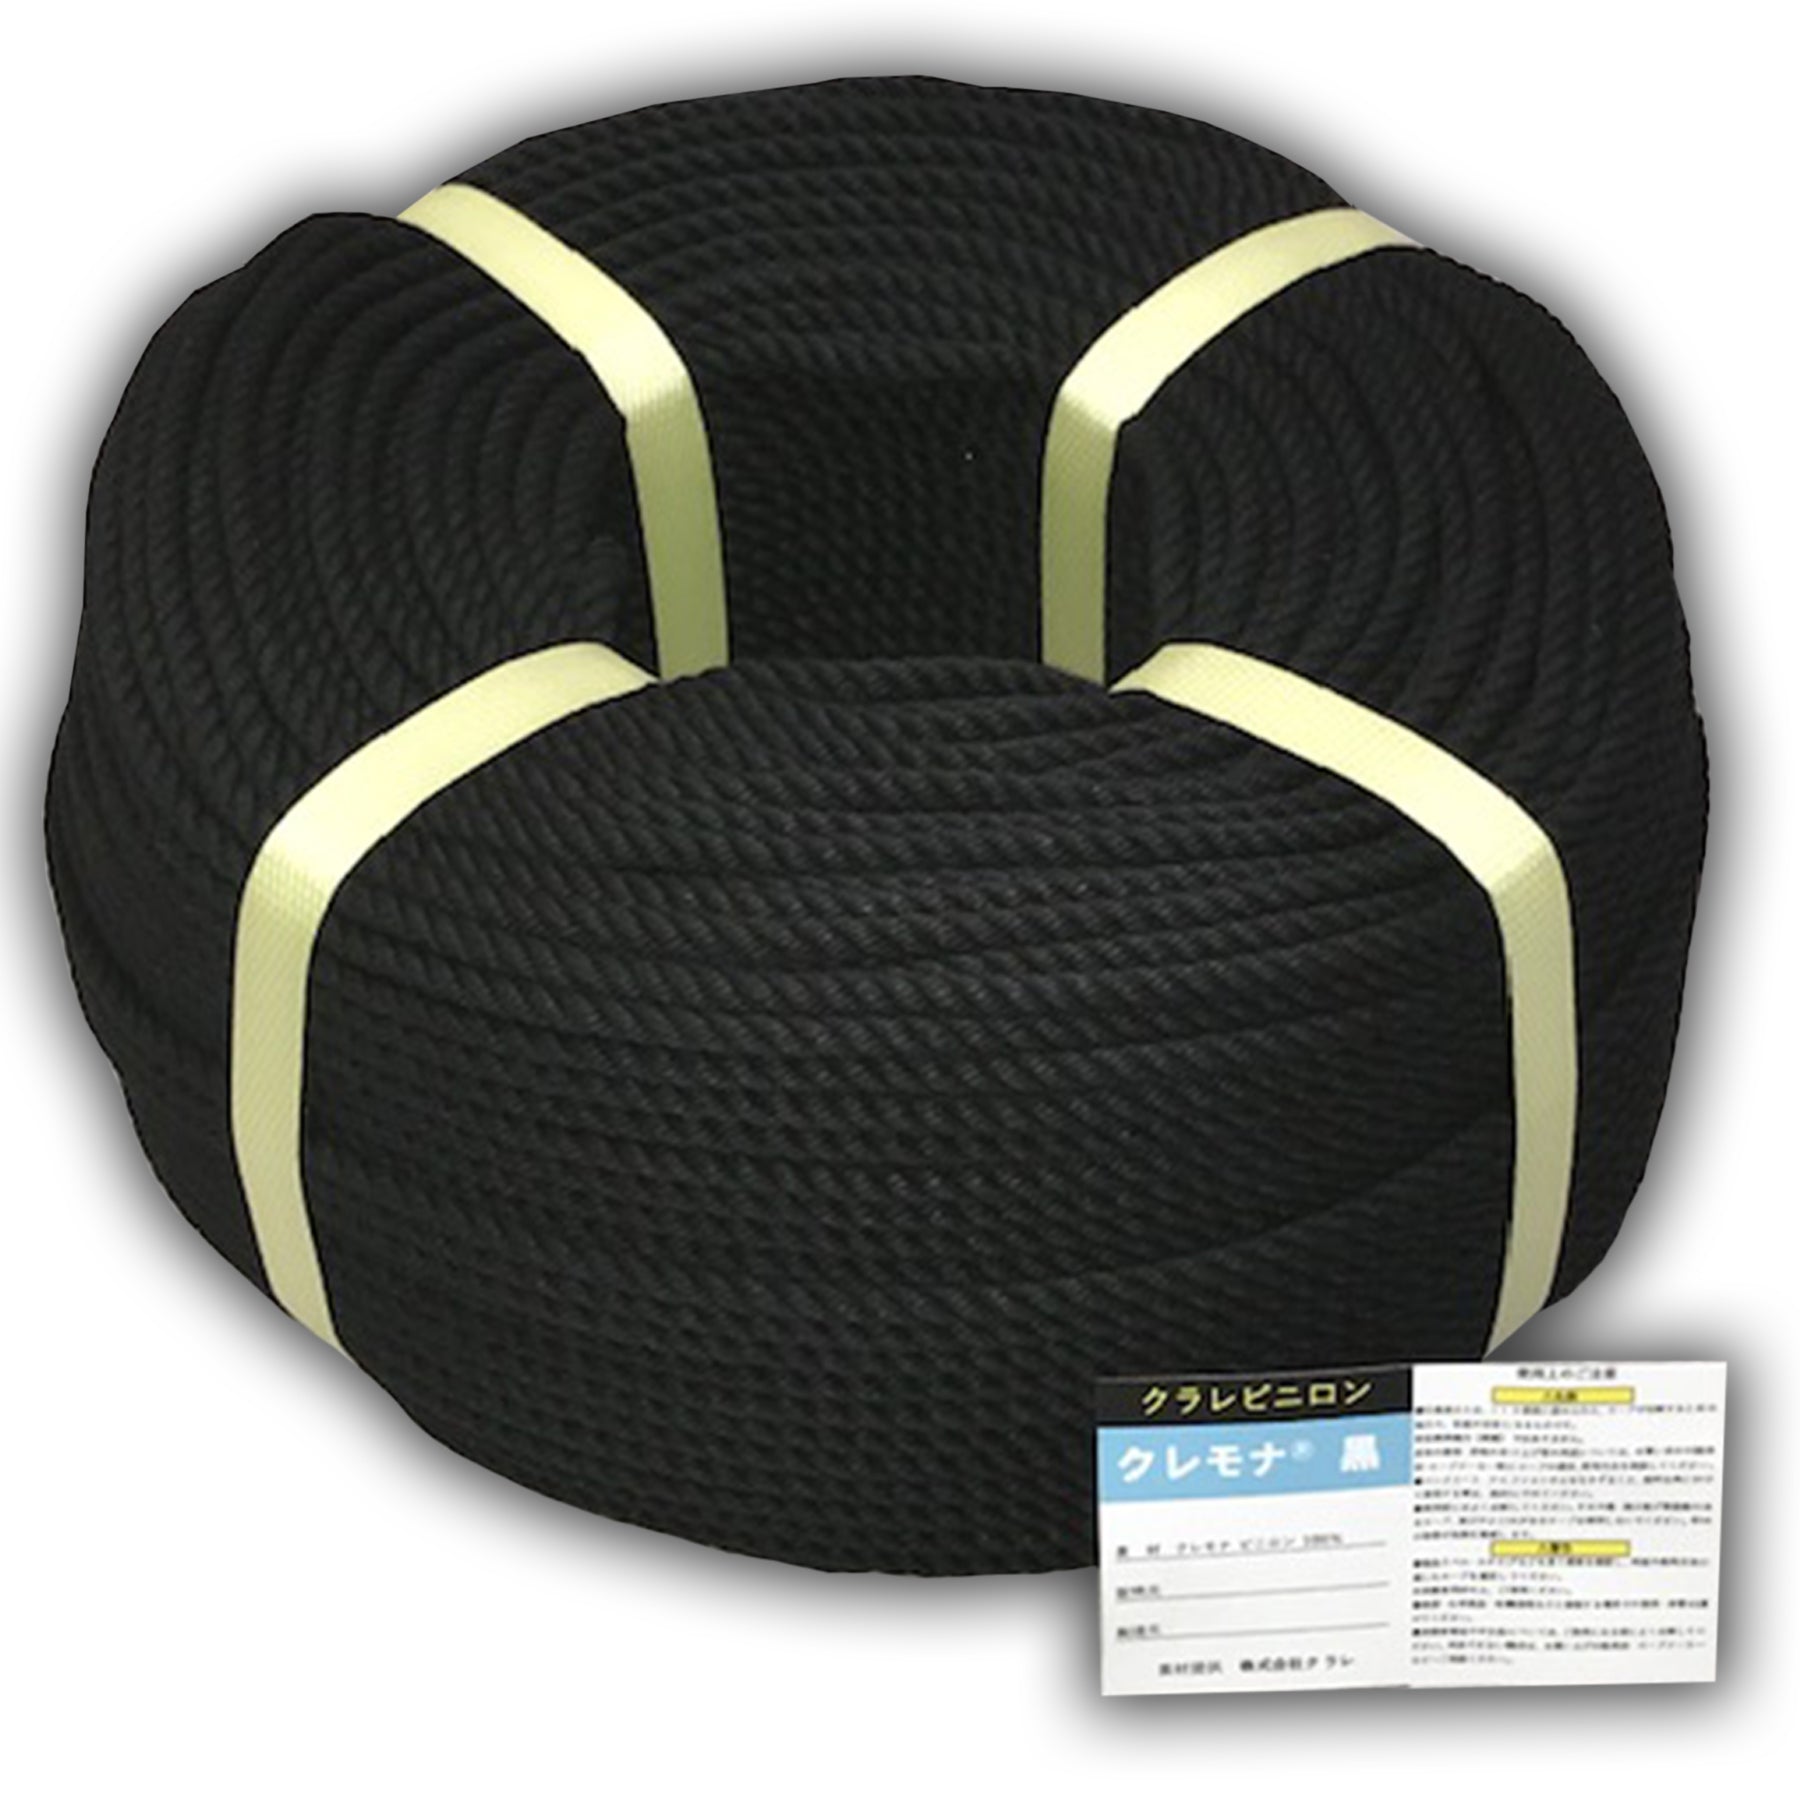 クレモナロープ 繊維ロープ クレモナSロープ 直径10mm×長さ50M 合繊 